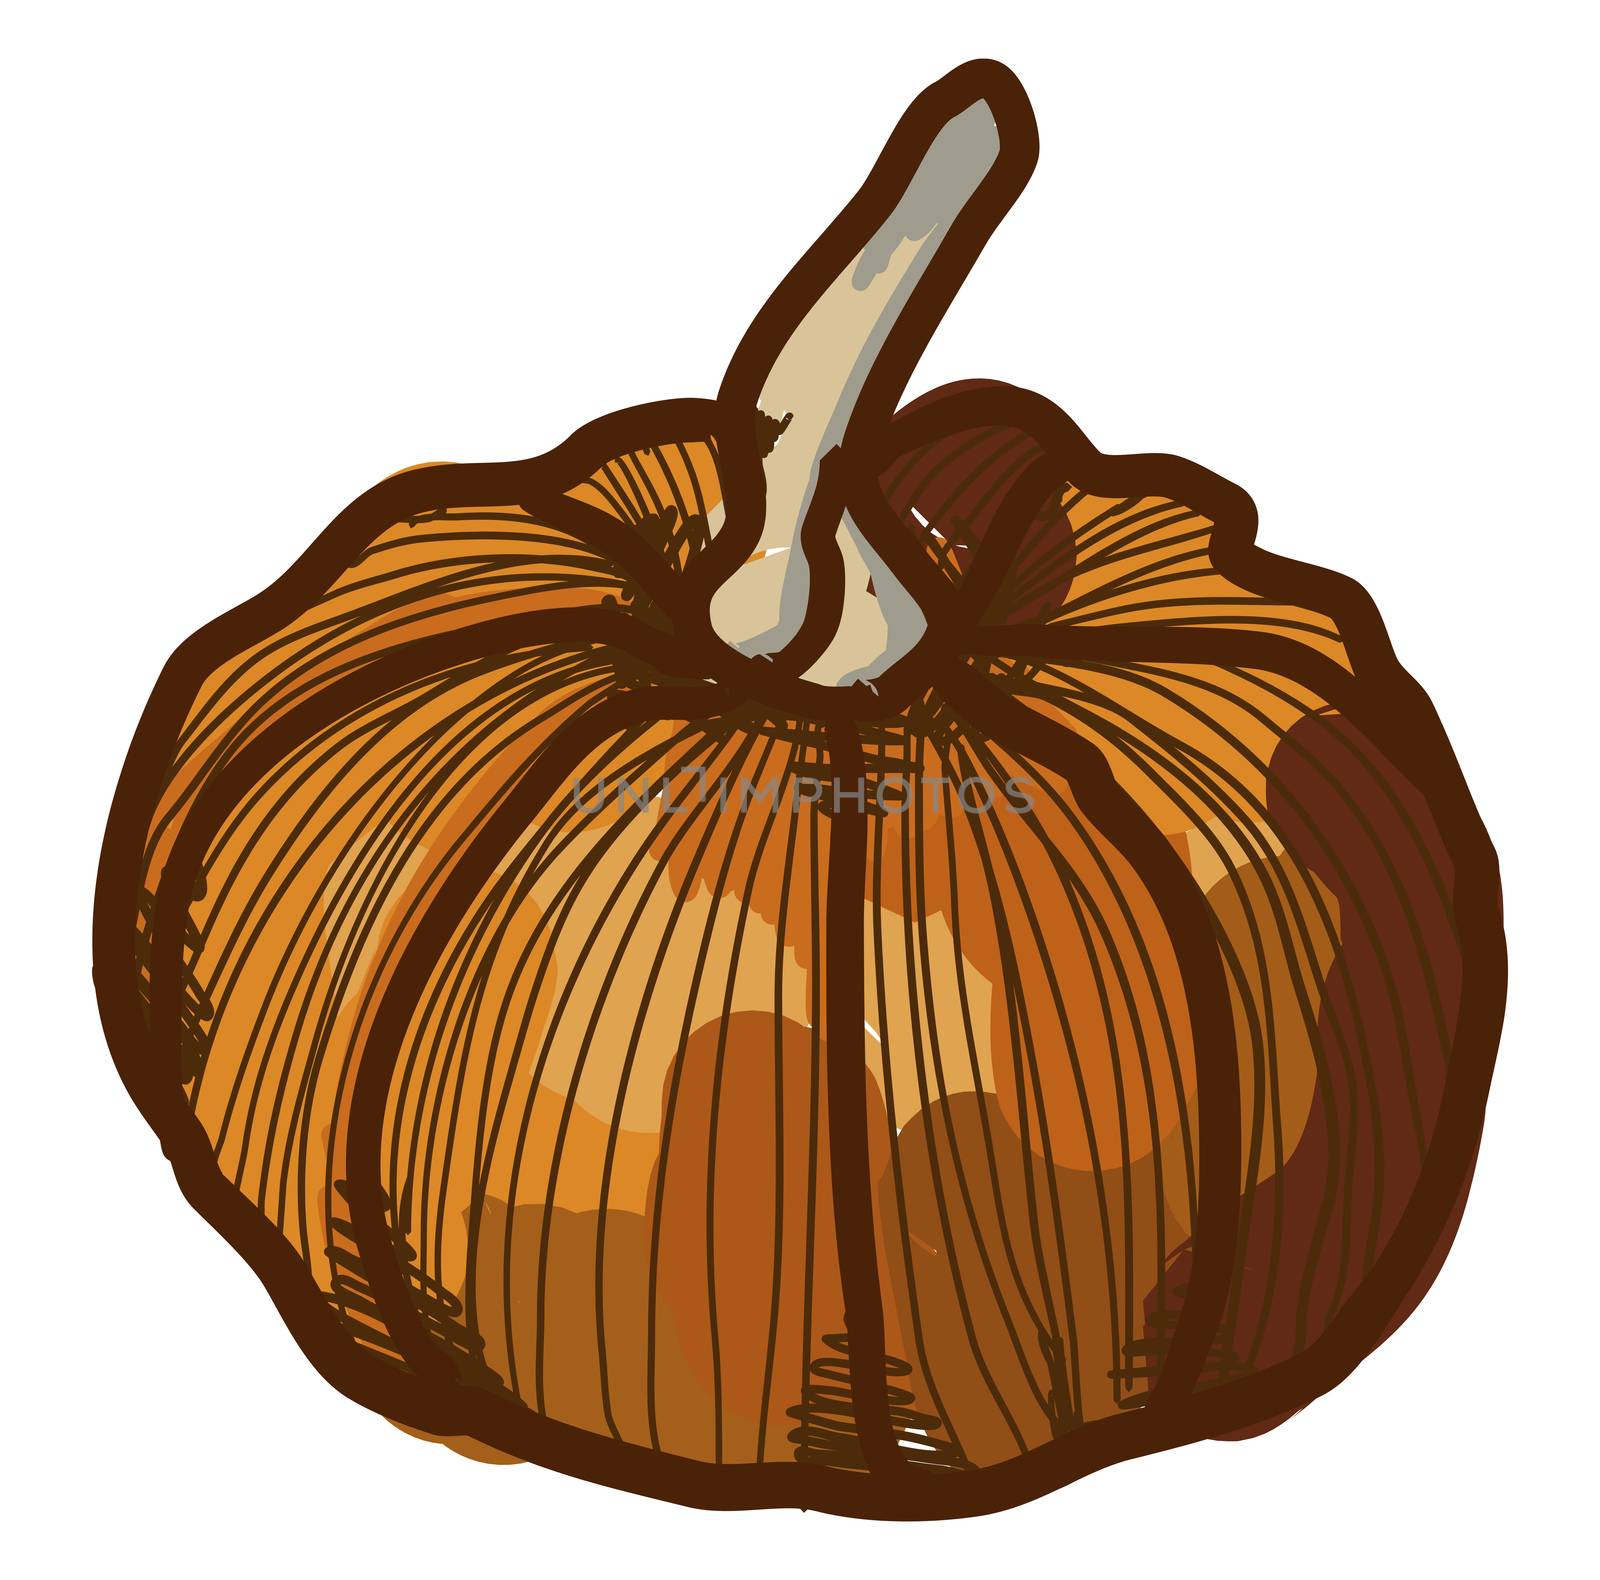 Mini pumpkin, illustration, vector on white background by Morphart